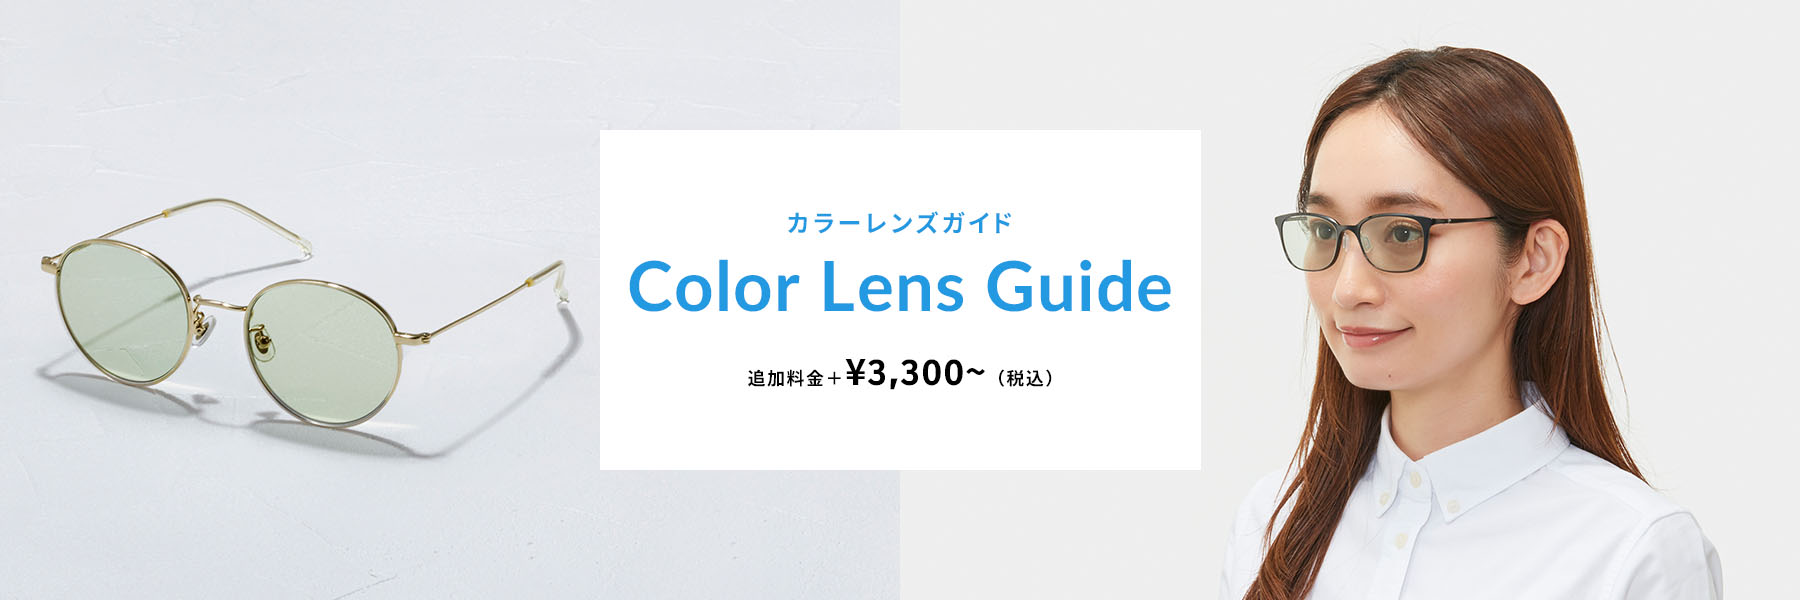 カラーレンズガイド Color Lens Guide